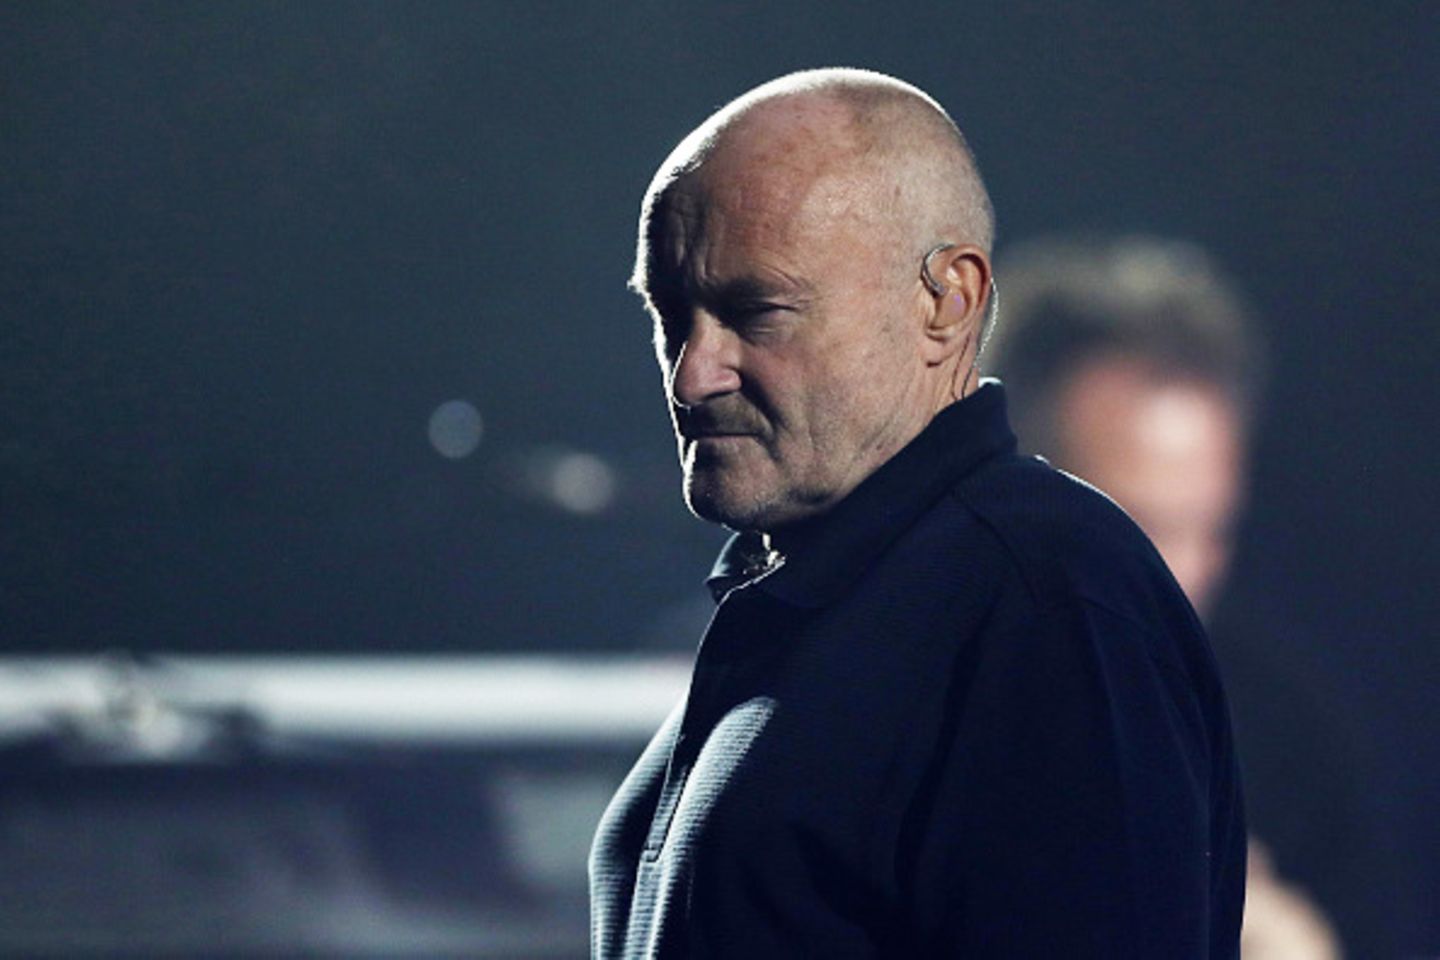 Phil Collins wirkt derzeit besonders kraftlos - seine Fans machen sich große Sorgen